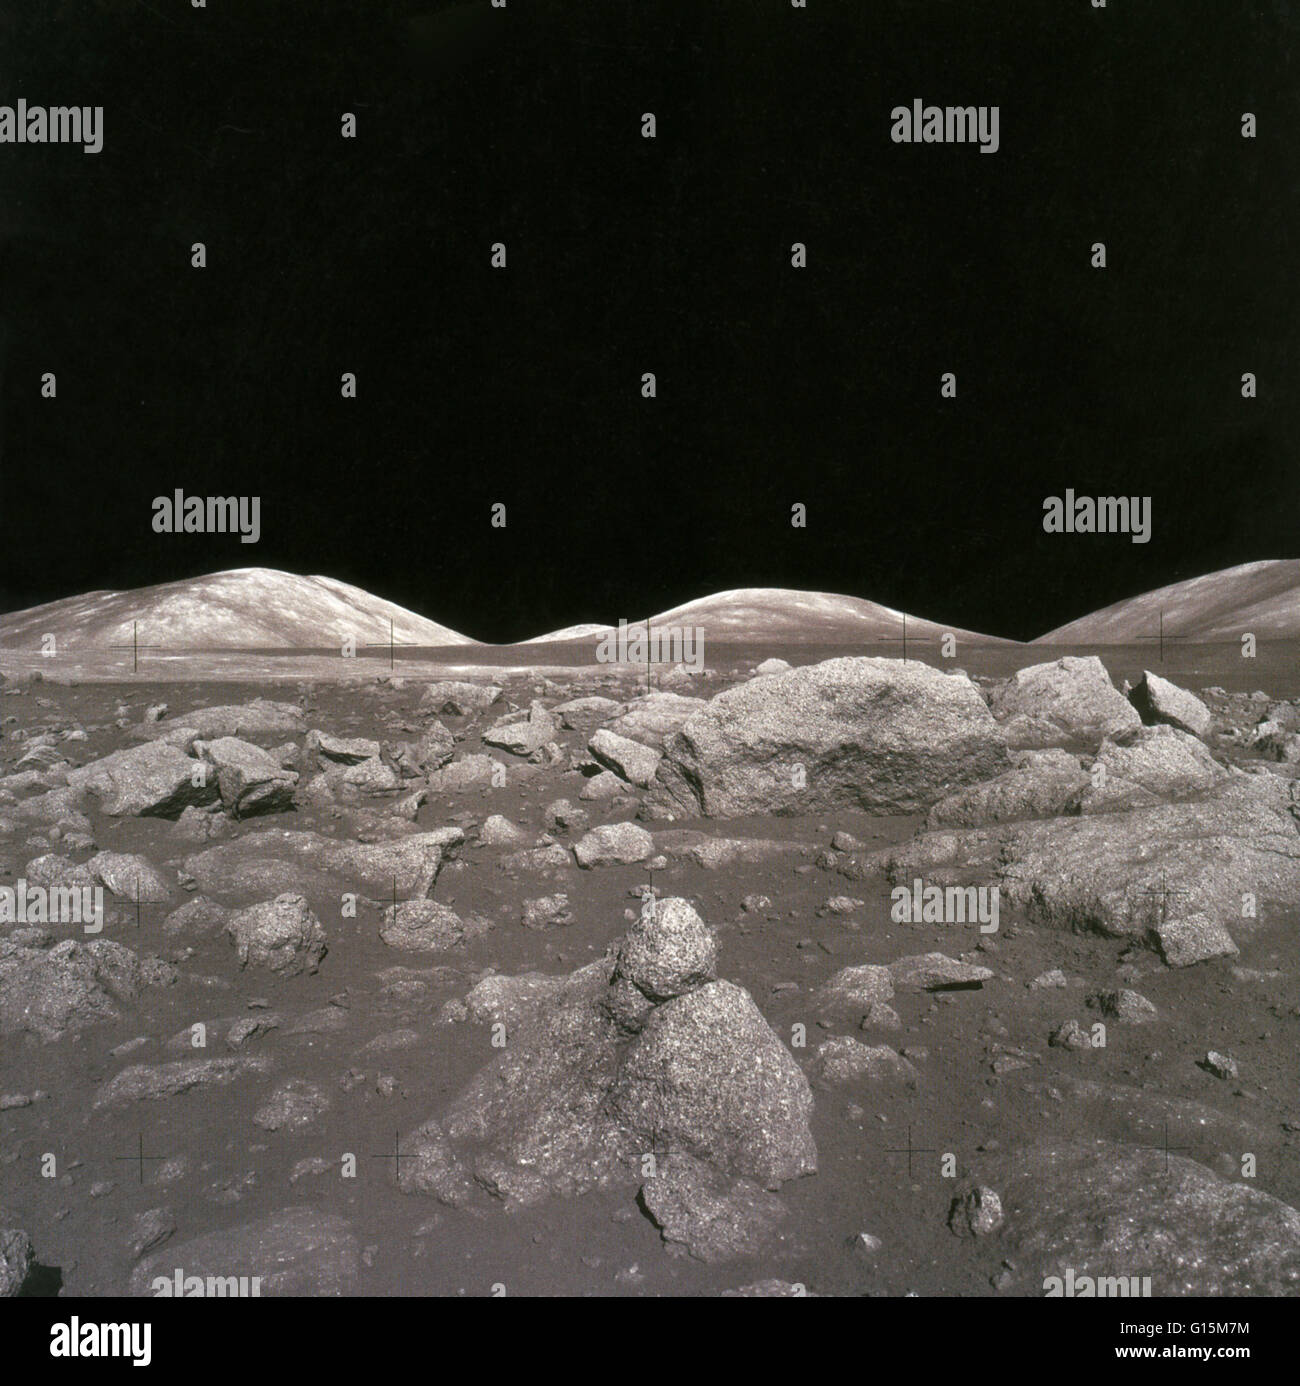 Camelot-Krater auf dem Mond während der Apollo 17-Mission aufgenommen. Apollo 17 landete am 11. Dezember 1972 in der Taurus-Littrow-Region, östlich von Meer der Ruhe. Der Ort wurde für seine erwarteten geologische Vielfalt ausgewählt. Astronaut Eugene Cernan war ein Stockfoto